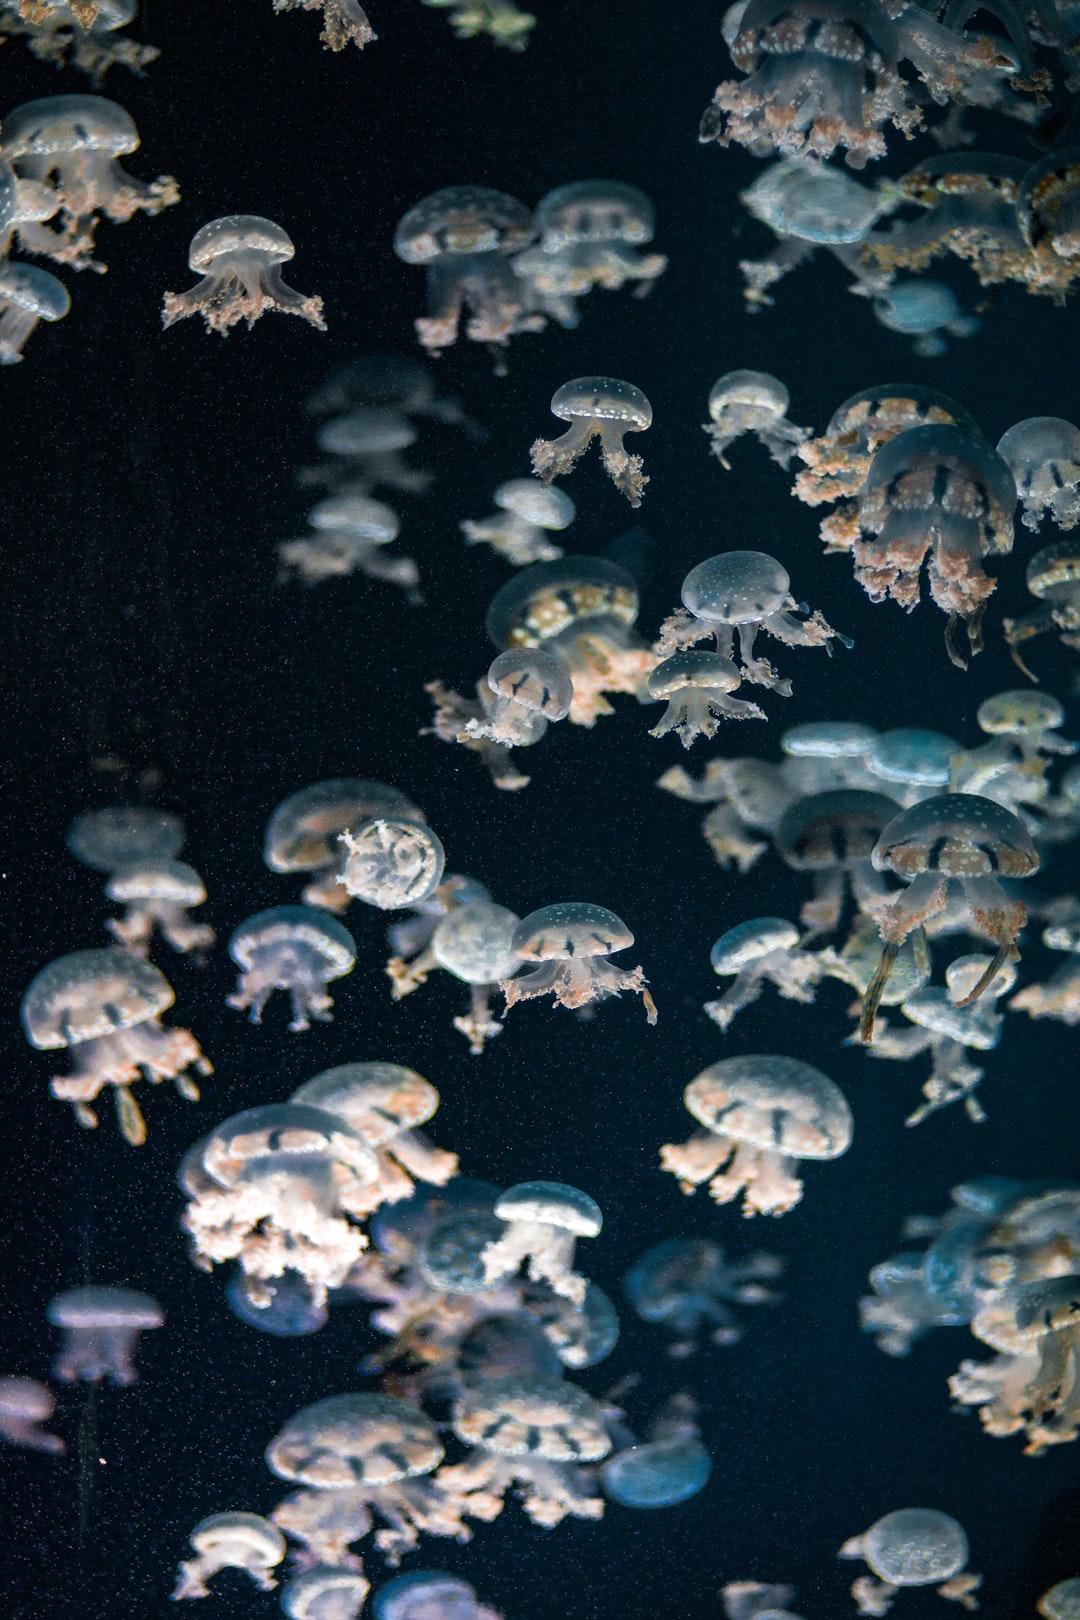 25 wichtige Fragen zu Schnecken Im Aquarium Halten